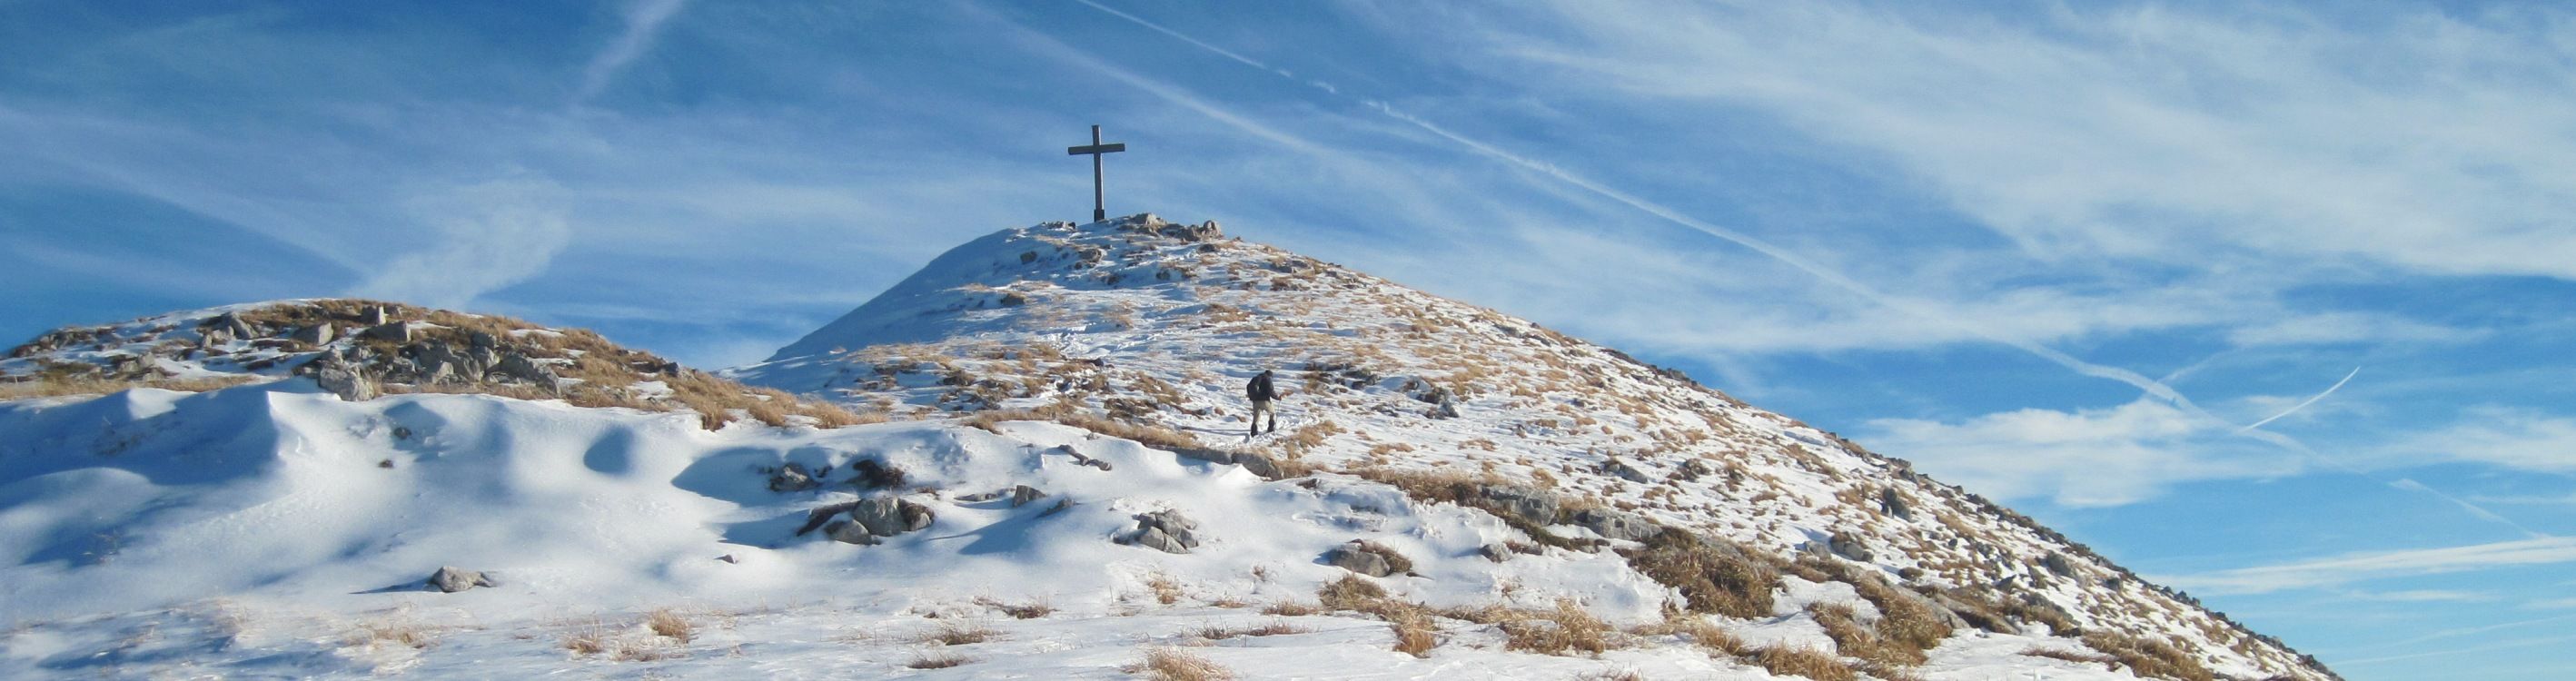 Der winterliche Gipfel des Krottenkopf im Estergebirge.